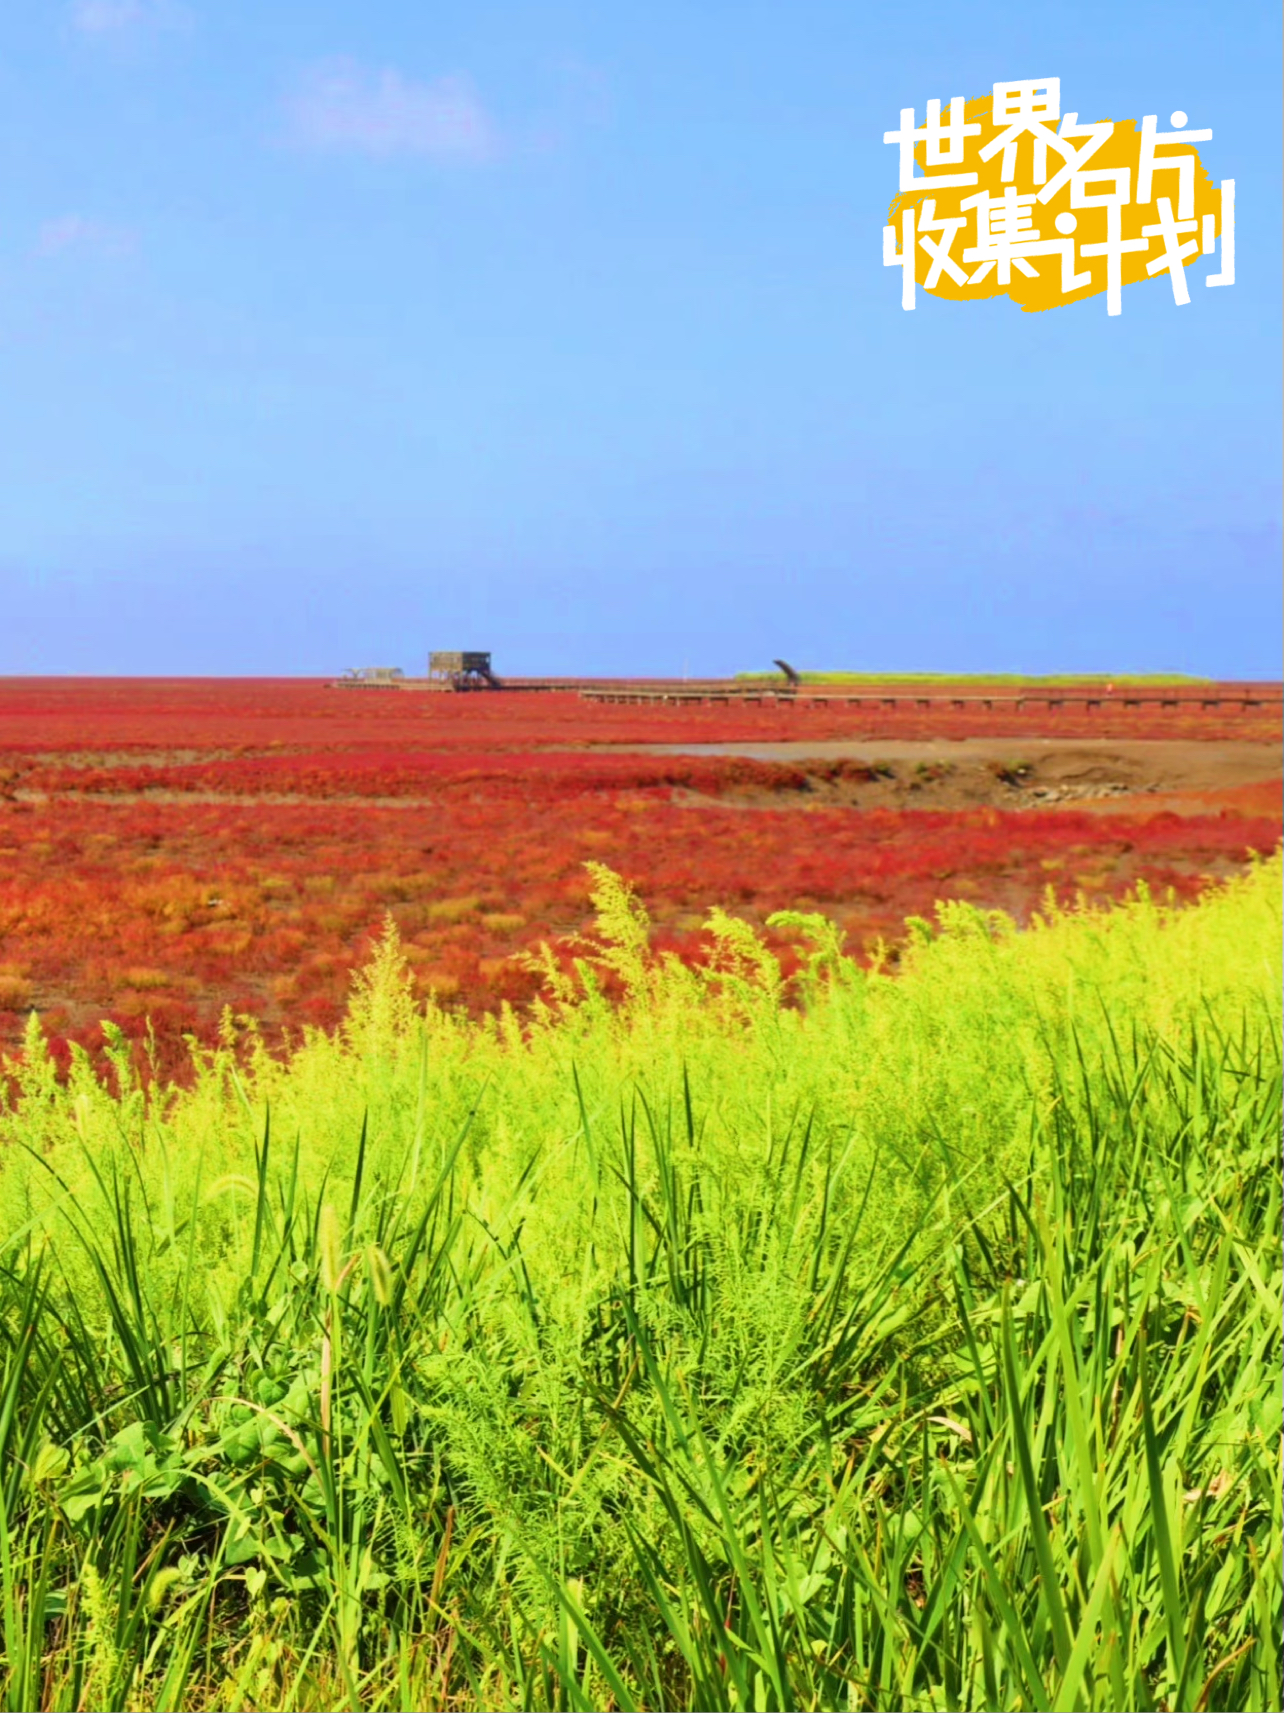 一起去辽宁旅行吧，盘锦最美的地方红海滩